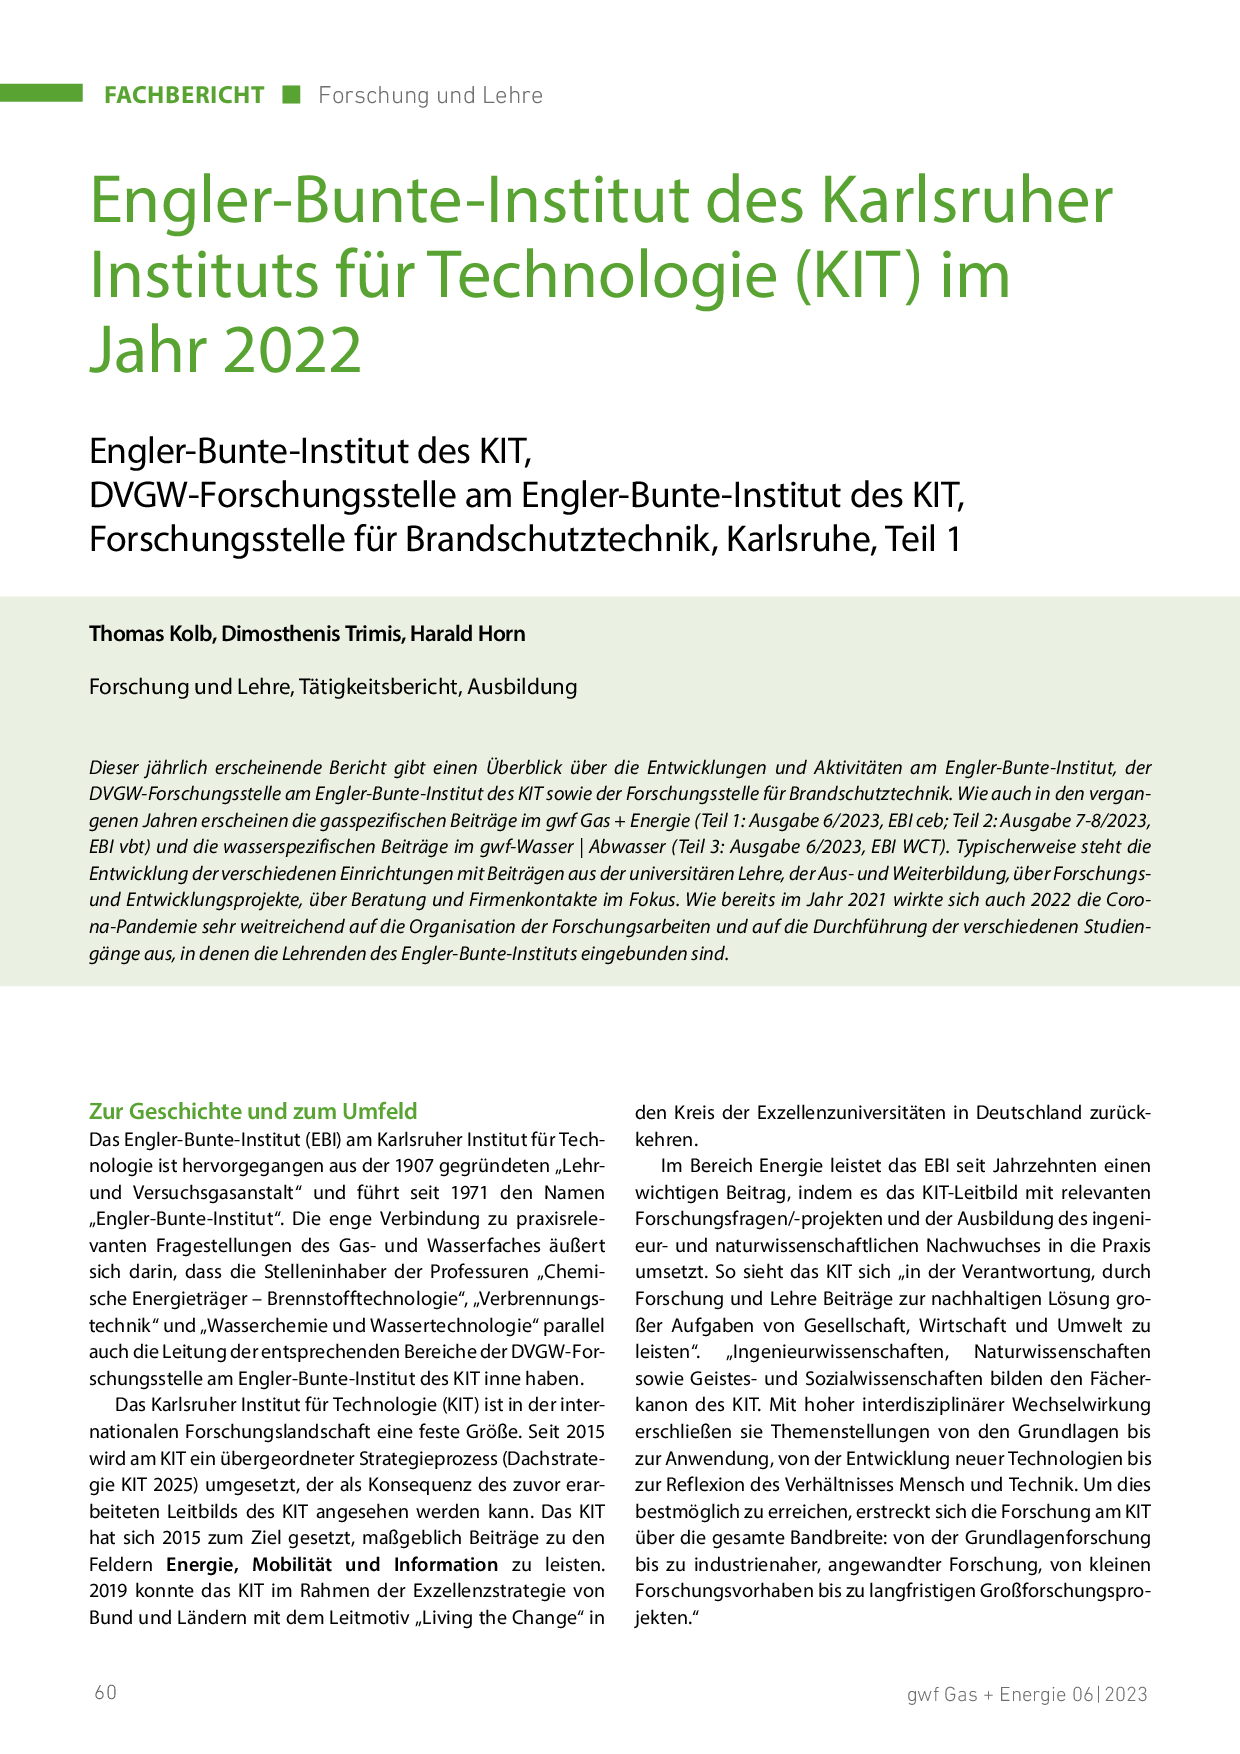 Engler-Bunte-Institut des Karlsruher Instituts für Technologie (KIT) im Jahr 2022